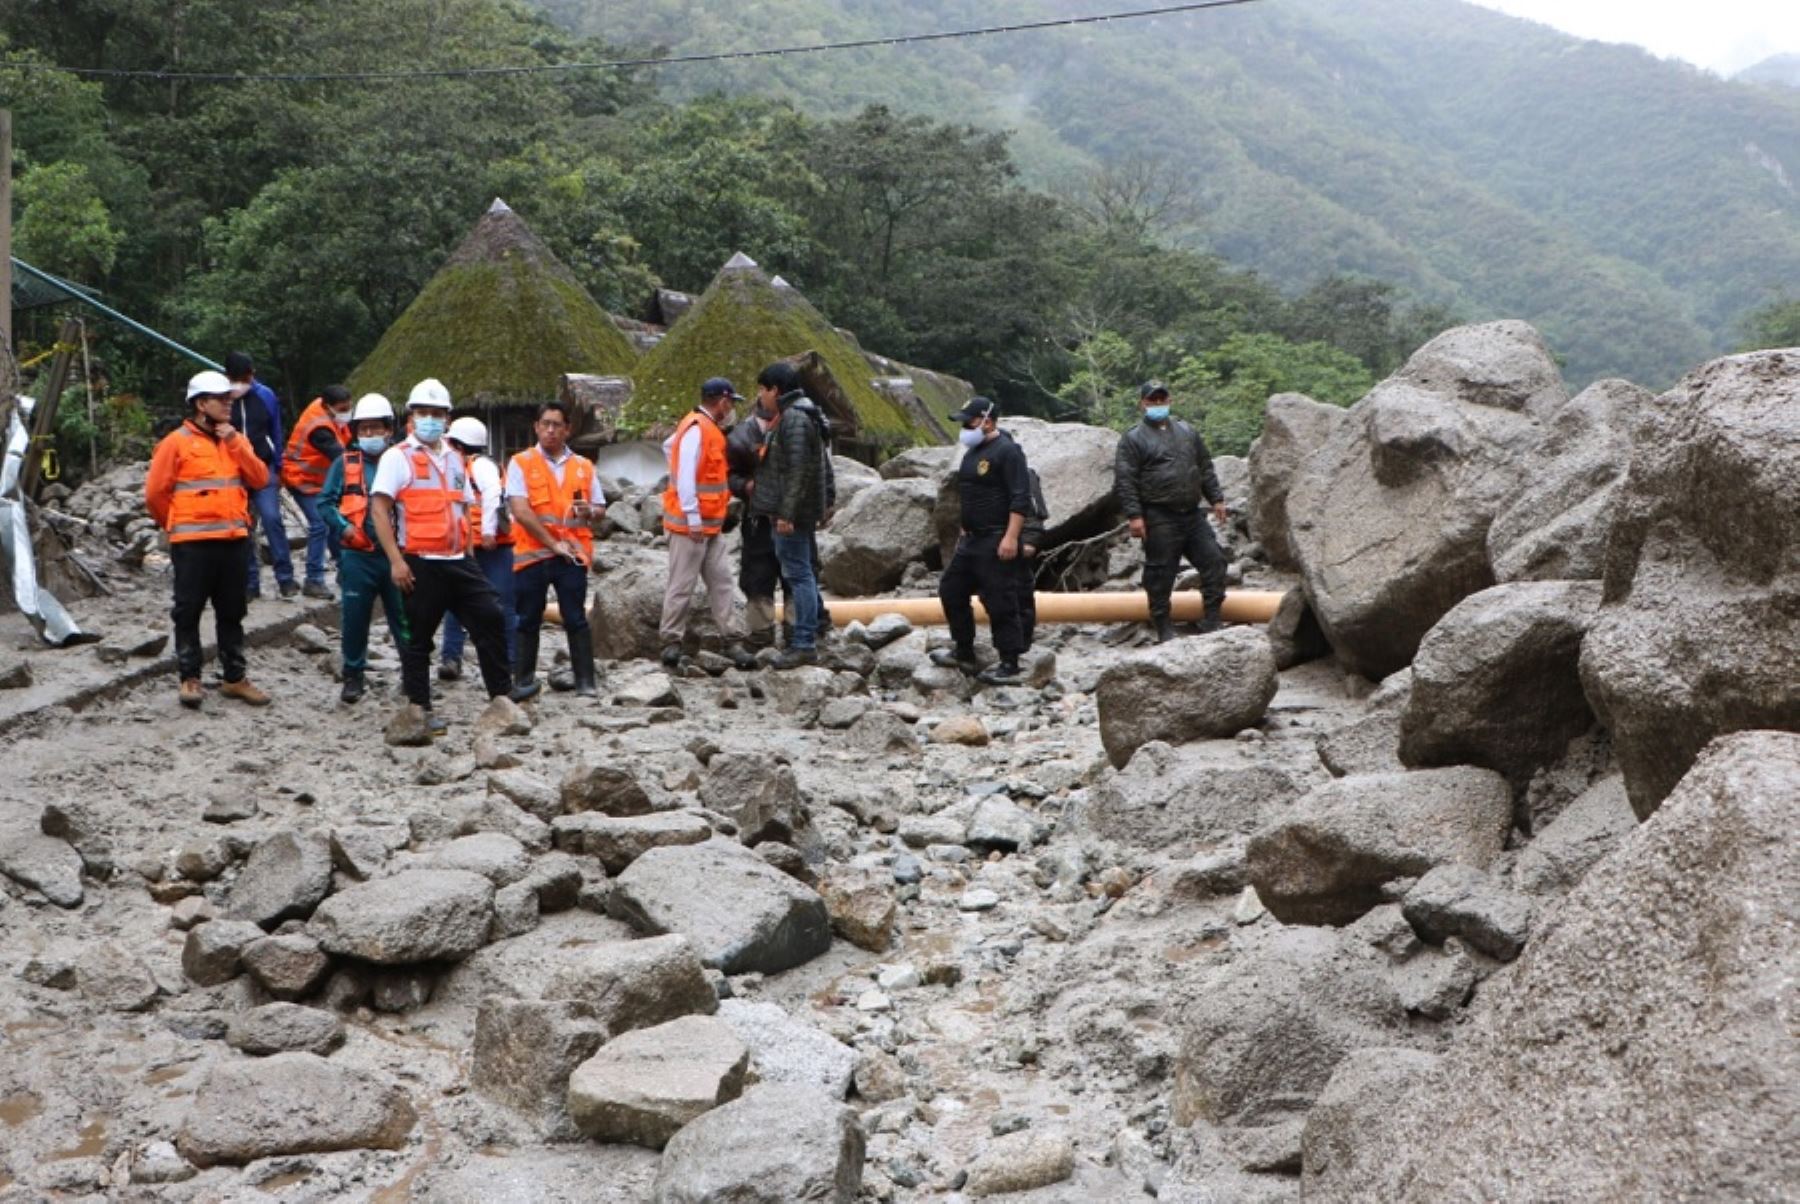 La ciudadela inca de Machu Picchu y la Red de Caminos Inca no han sido afectados por el huaico provocado por el desborde del río Alccamayo que afectó parte del distrito de Machu Picchu Pueblo, por lo que permanecerán en funcionamiento para los visitantes una vez que se restituyan las operaciones ferroviarias.